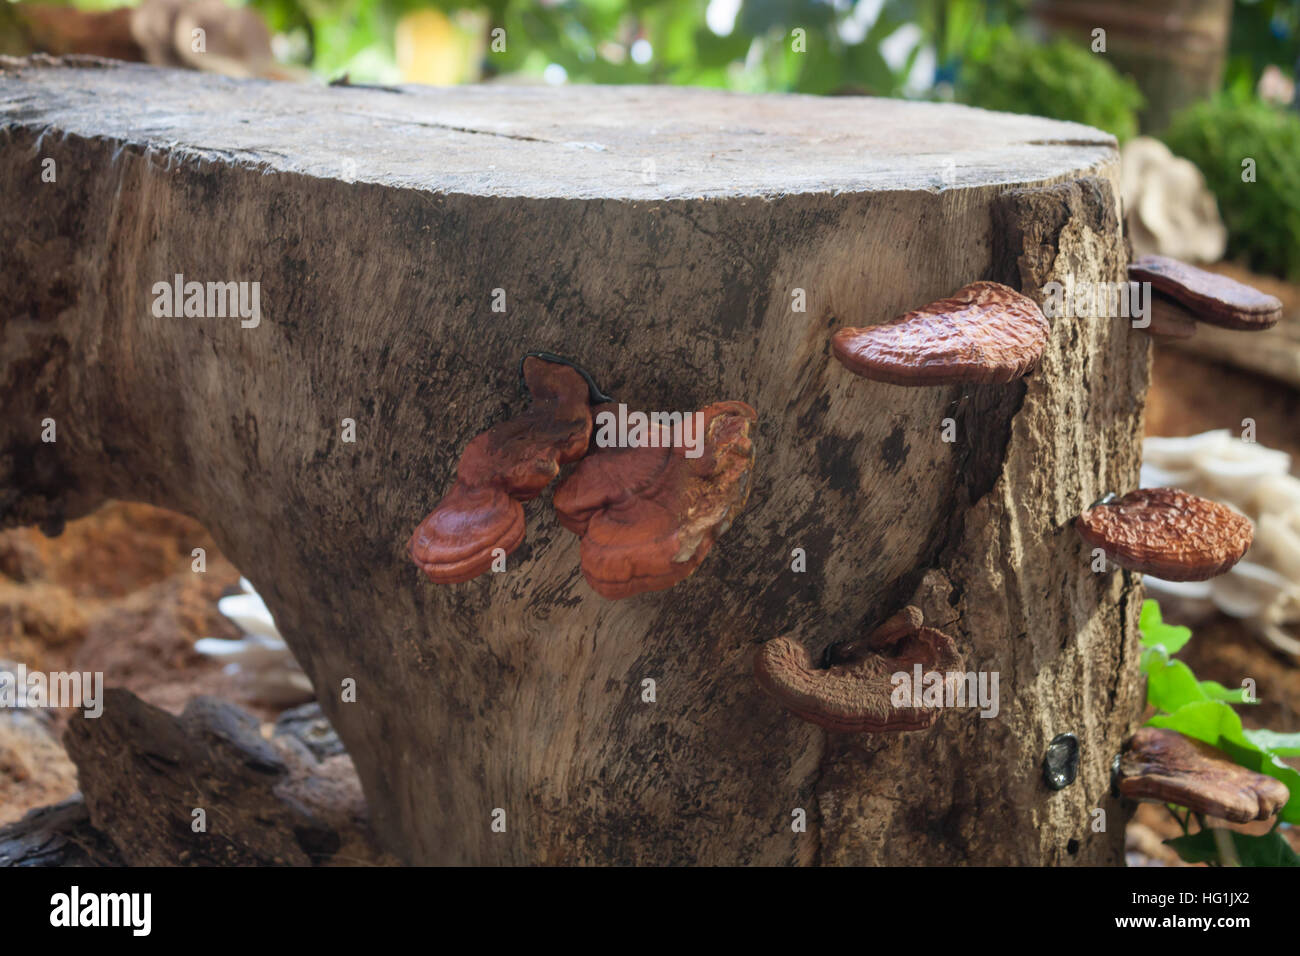 Fresco di fungo reishi per visualizzare, stock photo Foto Stock